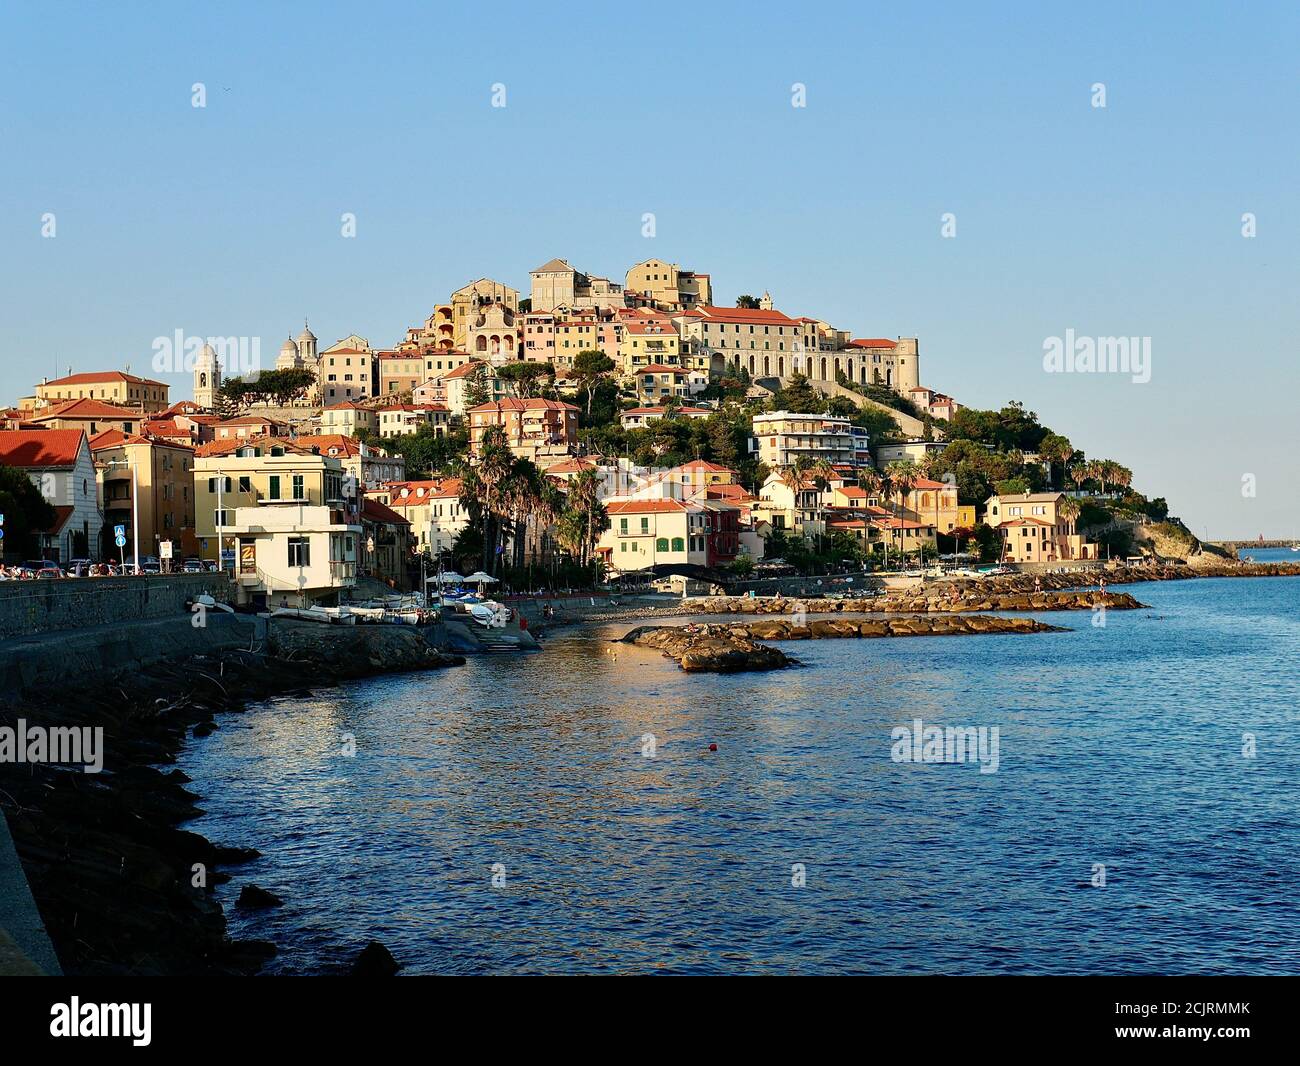 Schöner Ausblick auf Imperial mit dem Mittelmeer im Vordergrund. Schöne Altstadt an der Riviera Küste. Stock Photo